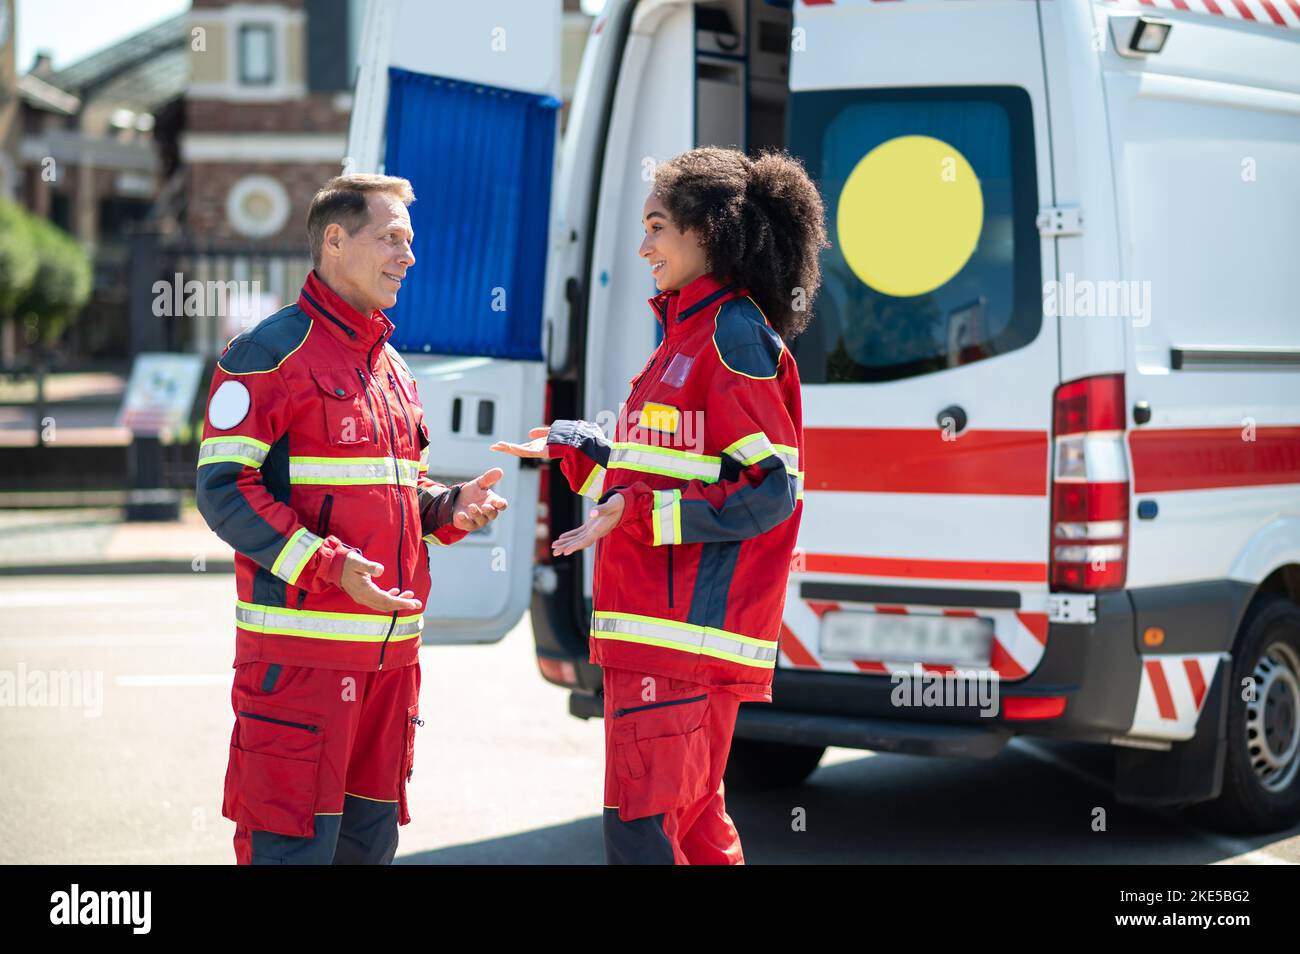 Médecins ambulanciers joyeux ayant une conversation à l'extérieur Banque D'Images